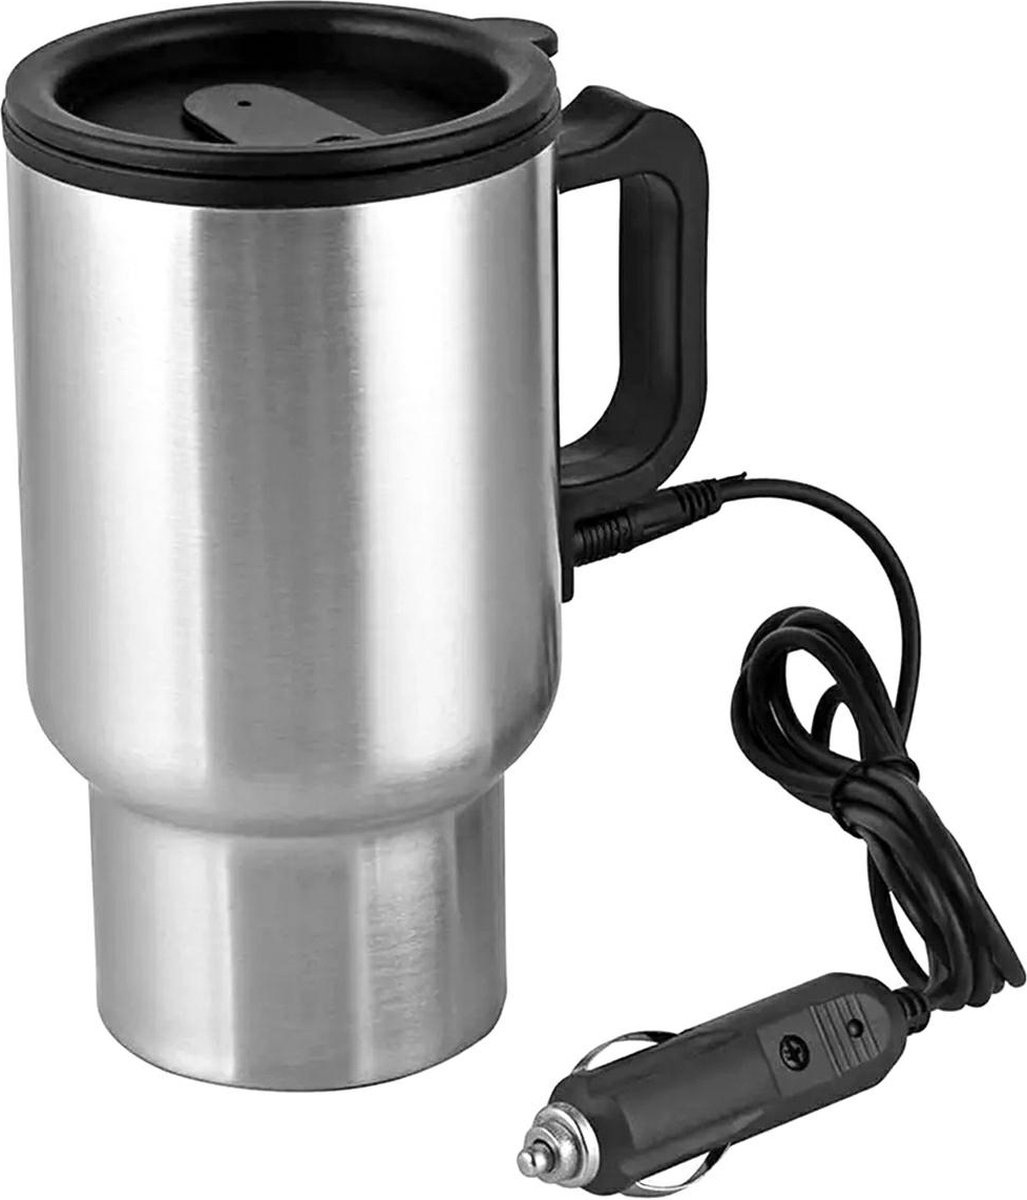 Chauffe-eau Mug pour voiture - Voiture Bouilloire électrique chauffée en acier  inoxydable Portable Allume-cigare Chauffage Tasse à café avec chargeur  -rose